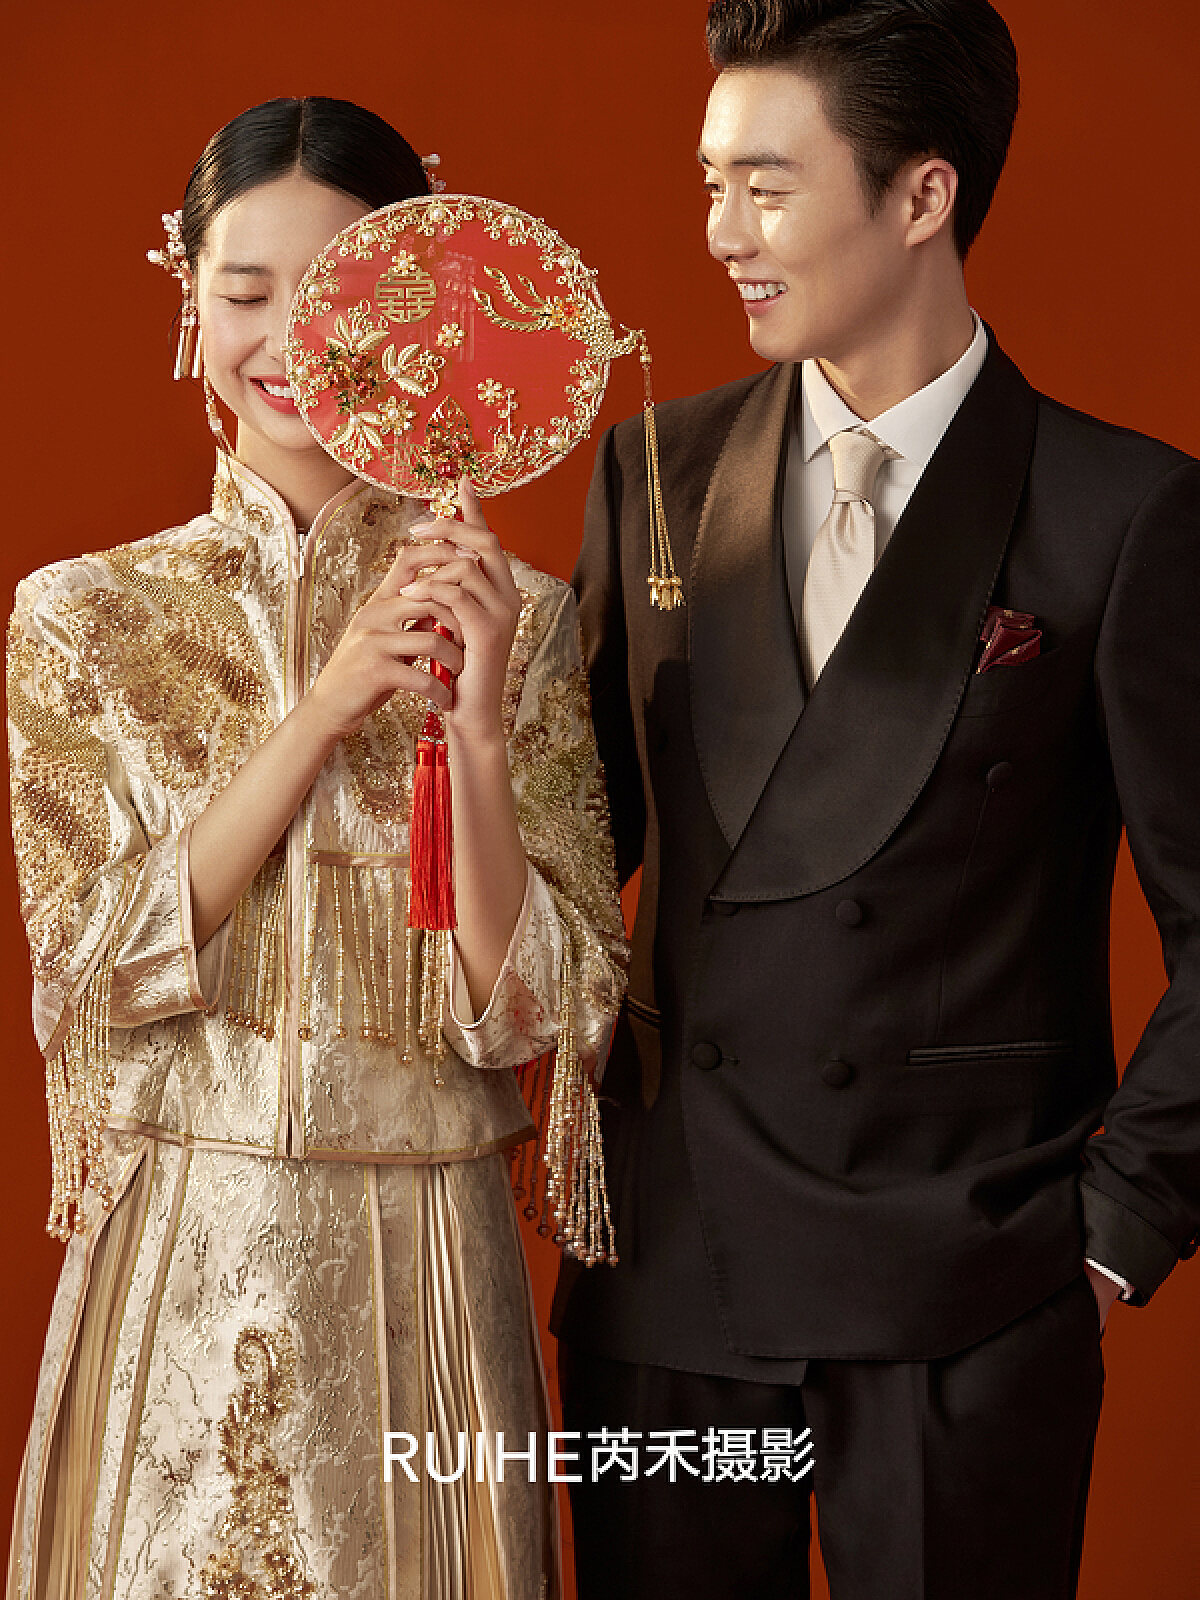 中式新娘服旗袍图片-海量高清中式新娘服旗袍图片大全 - 阿里巴巴